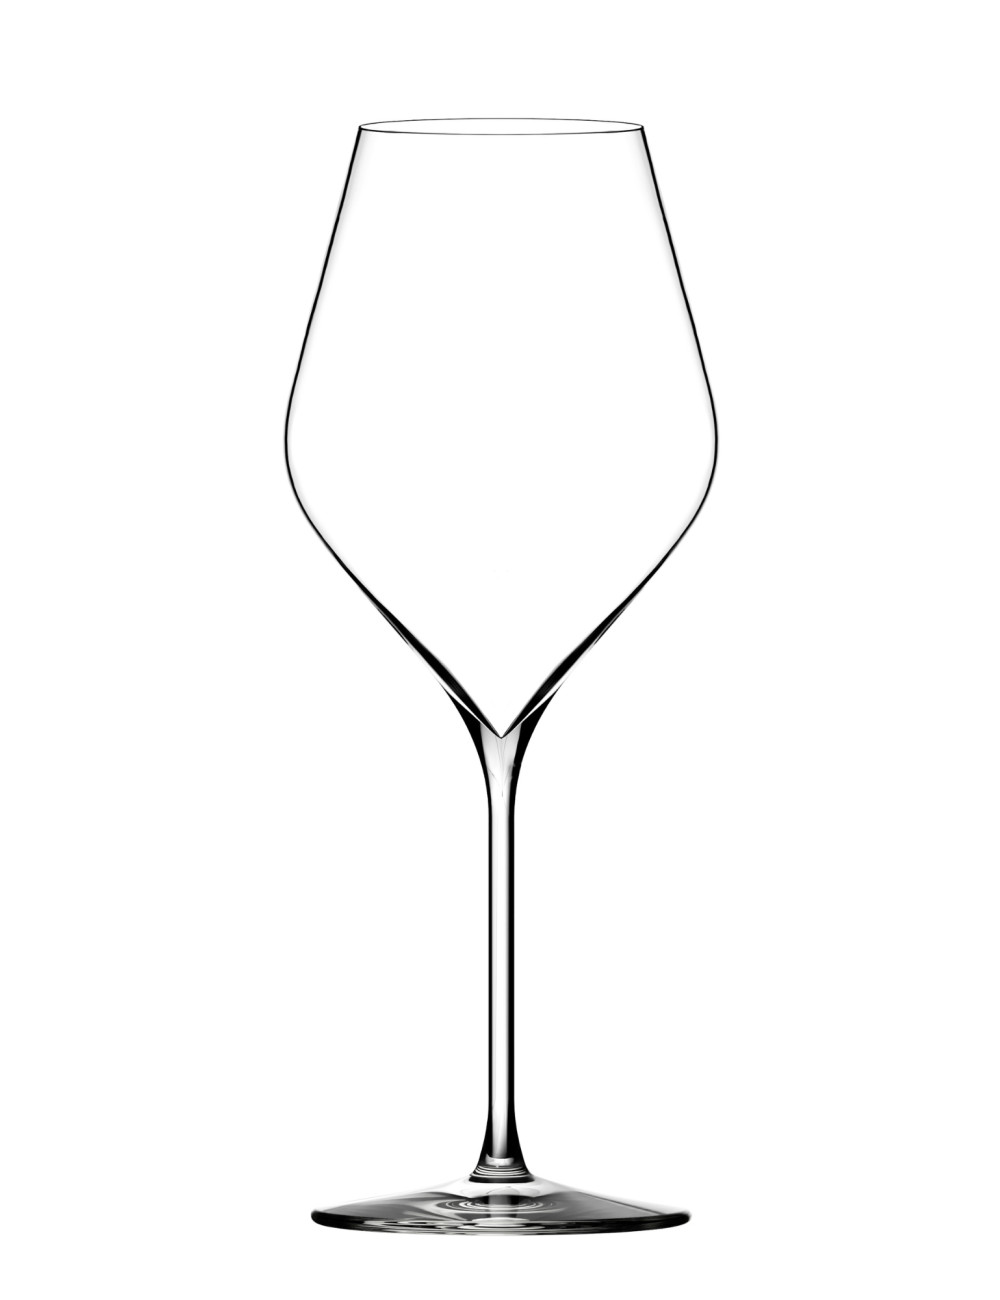 Hertog Ontmoedigd zijn anders Lehmann Glass | Absolus | 46cl | Multifunctioneel wijnglas